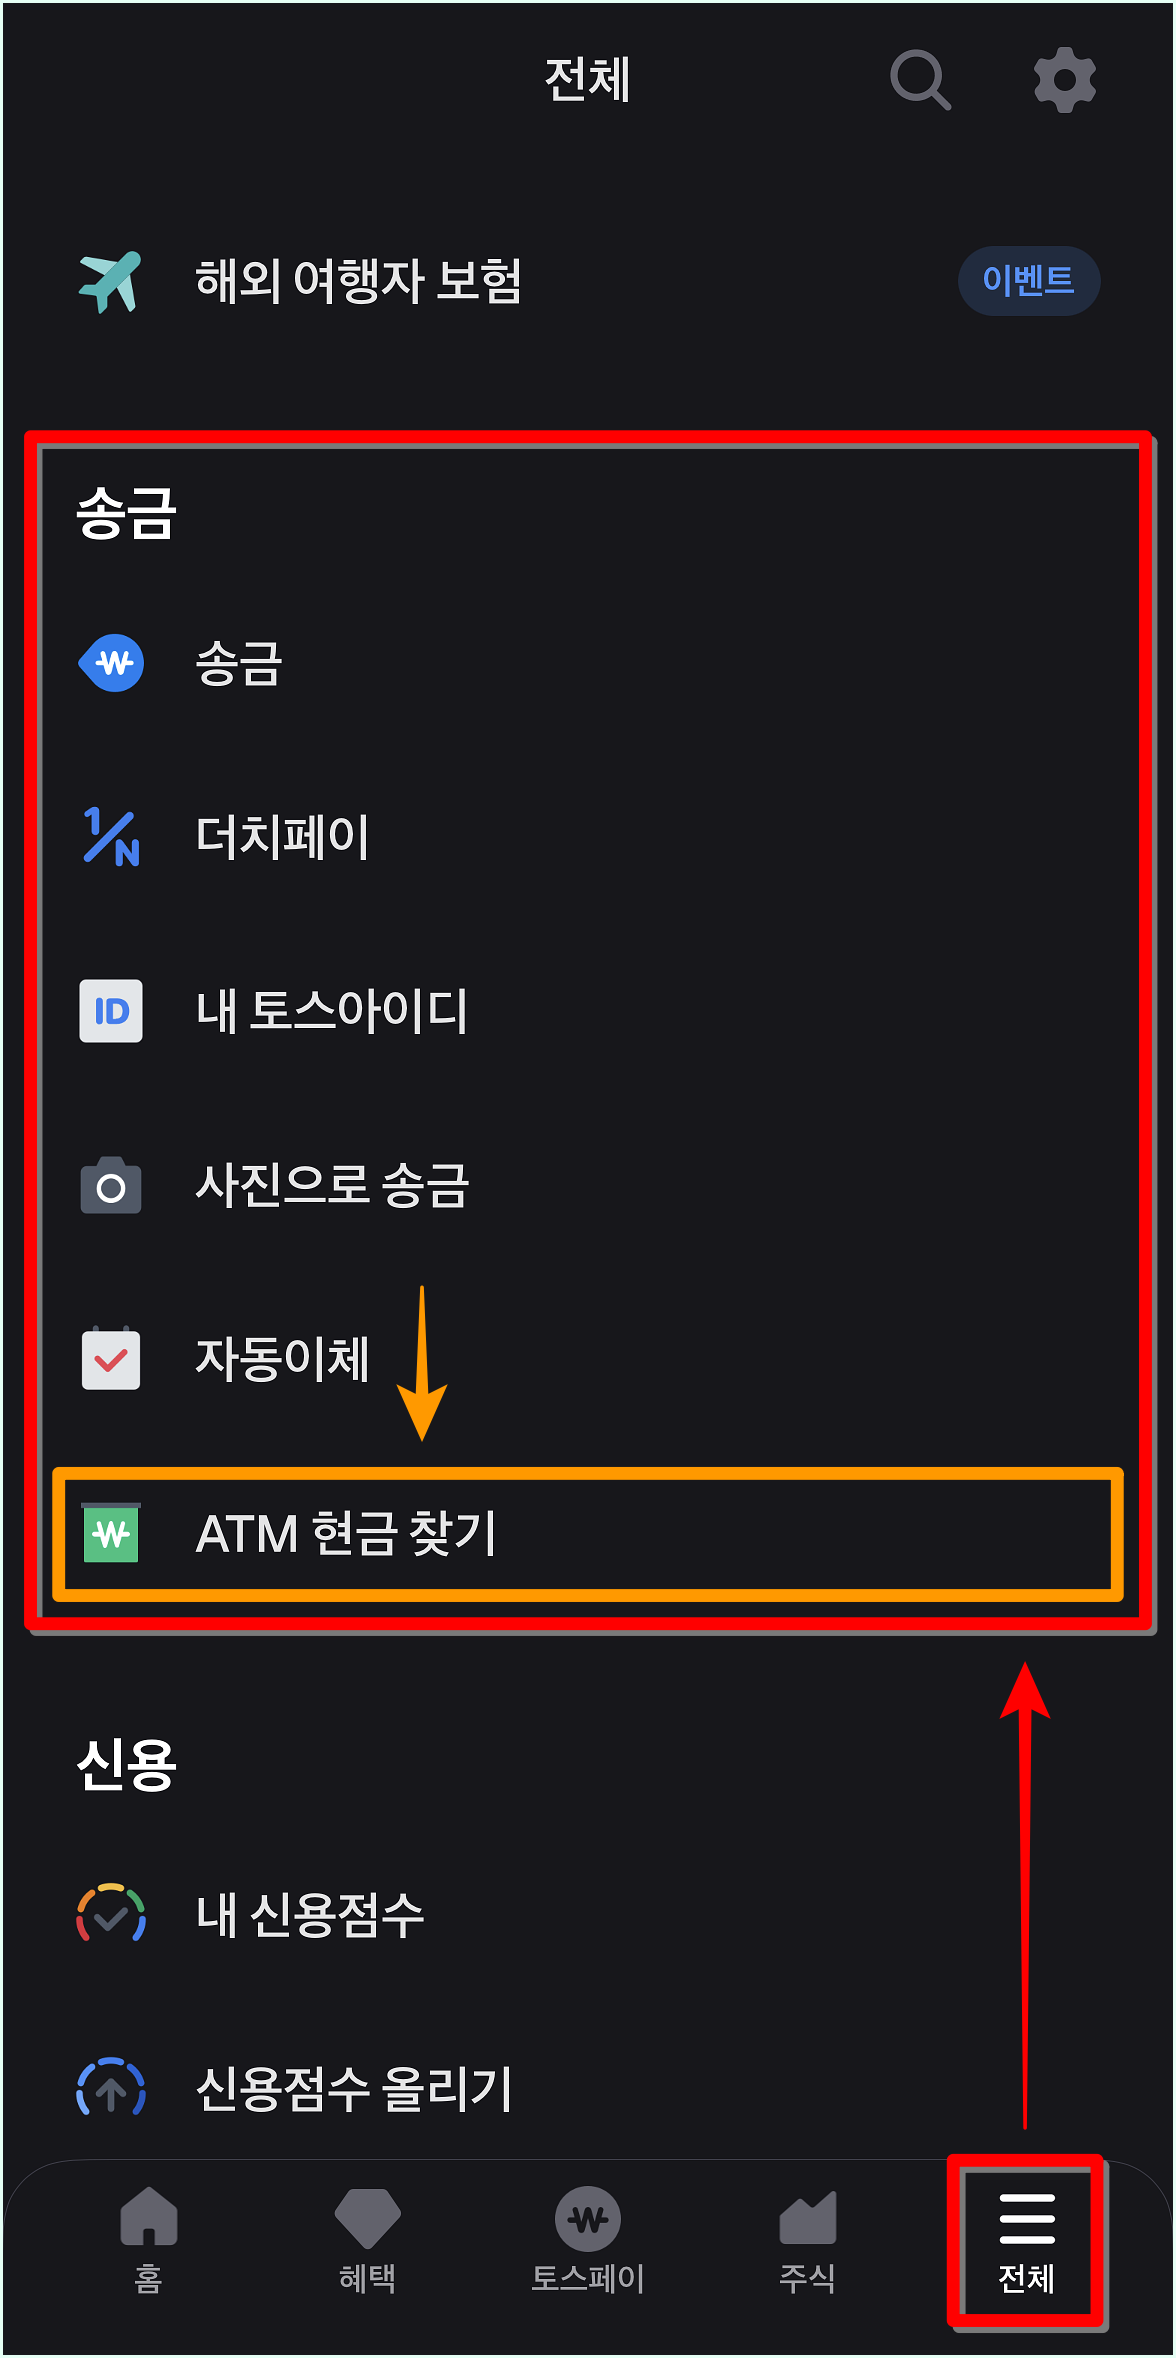 토스 앱의 전체 메뉴로 접속한 뒤, 송금 메뉴의 ATM 현금 찾기를 선택